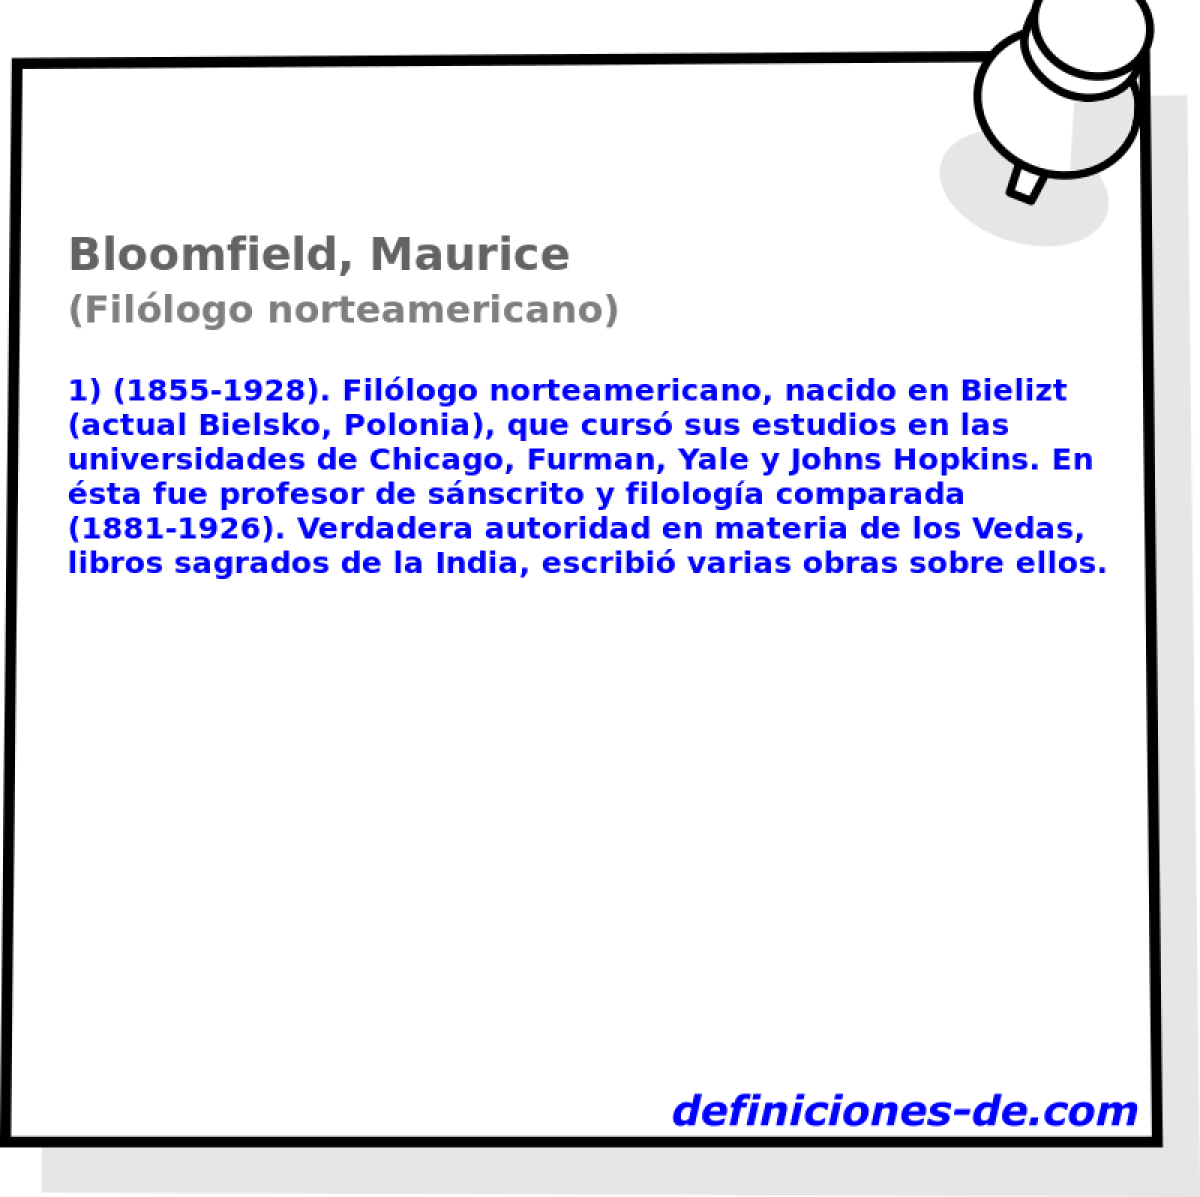 Bloomfield, Maurice (Fillogo norteamericano)